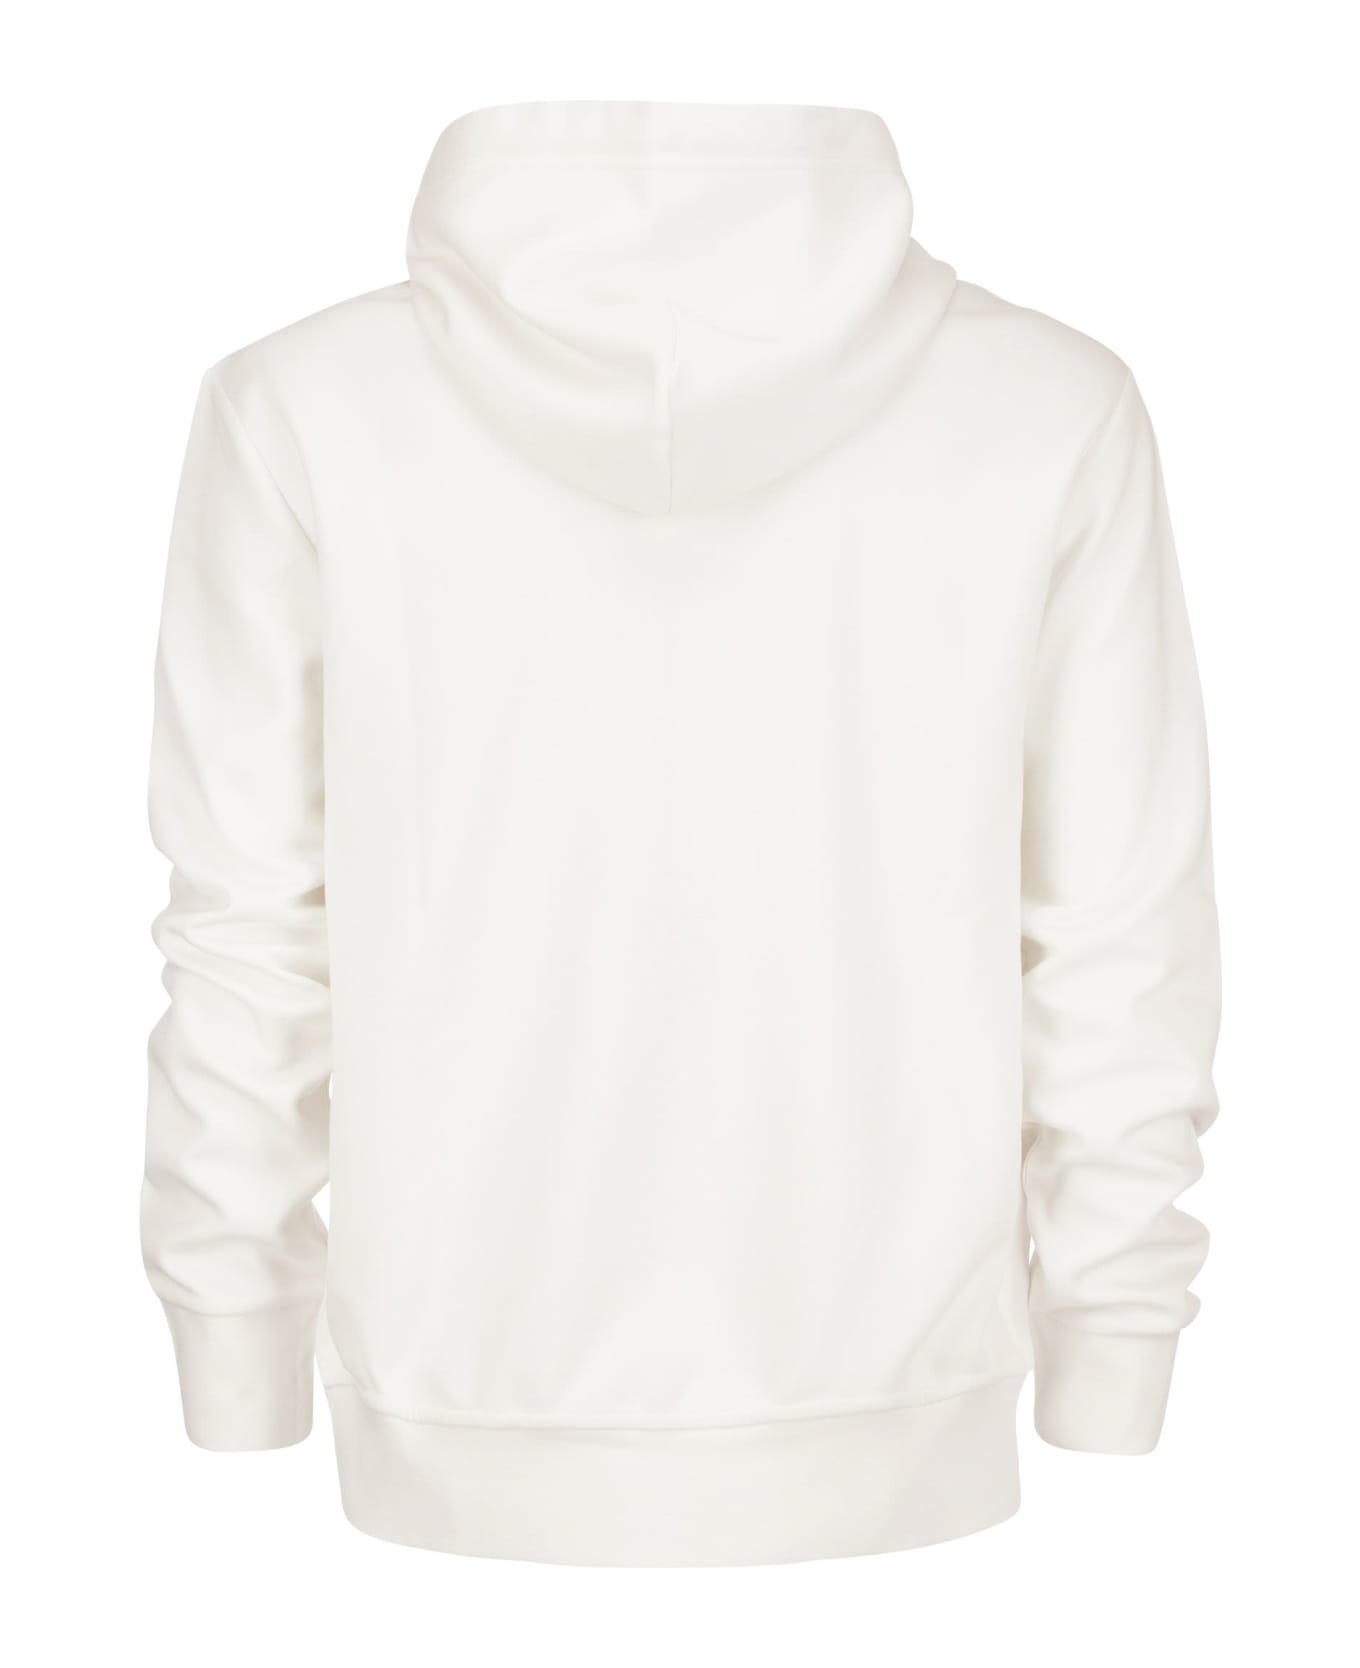 Polo Ralph Lauren Hooded Sweatshirt - White ニットウェア